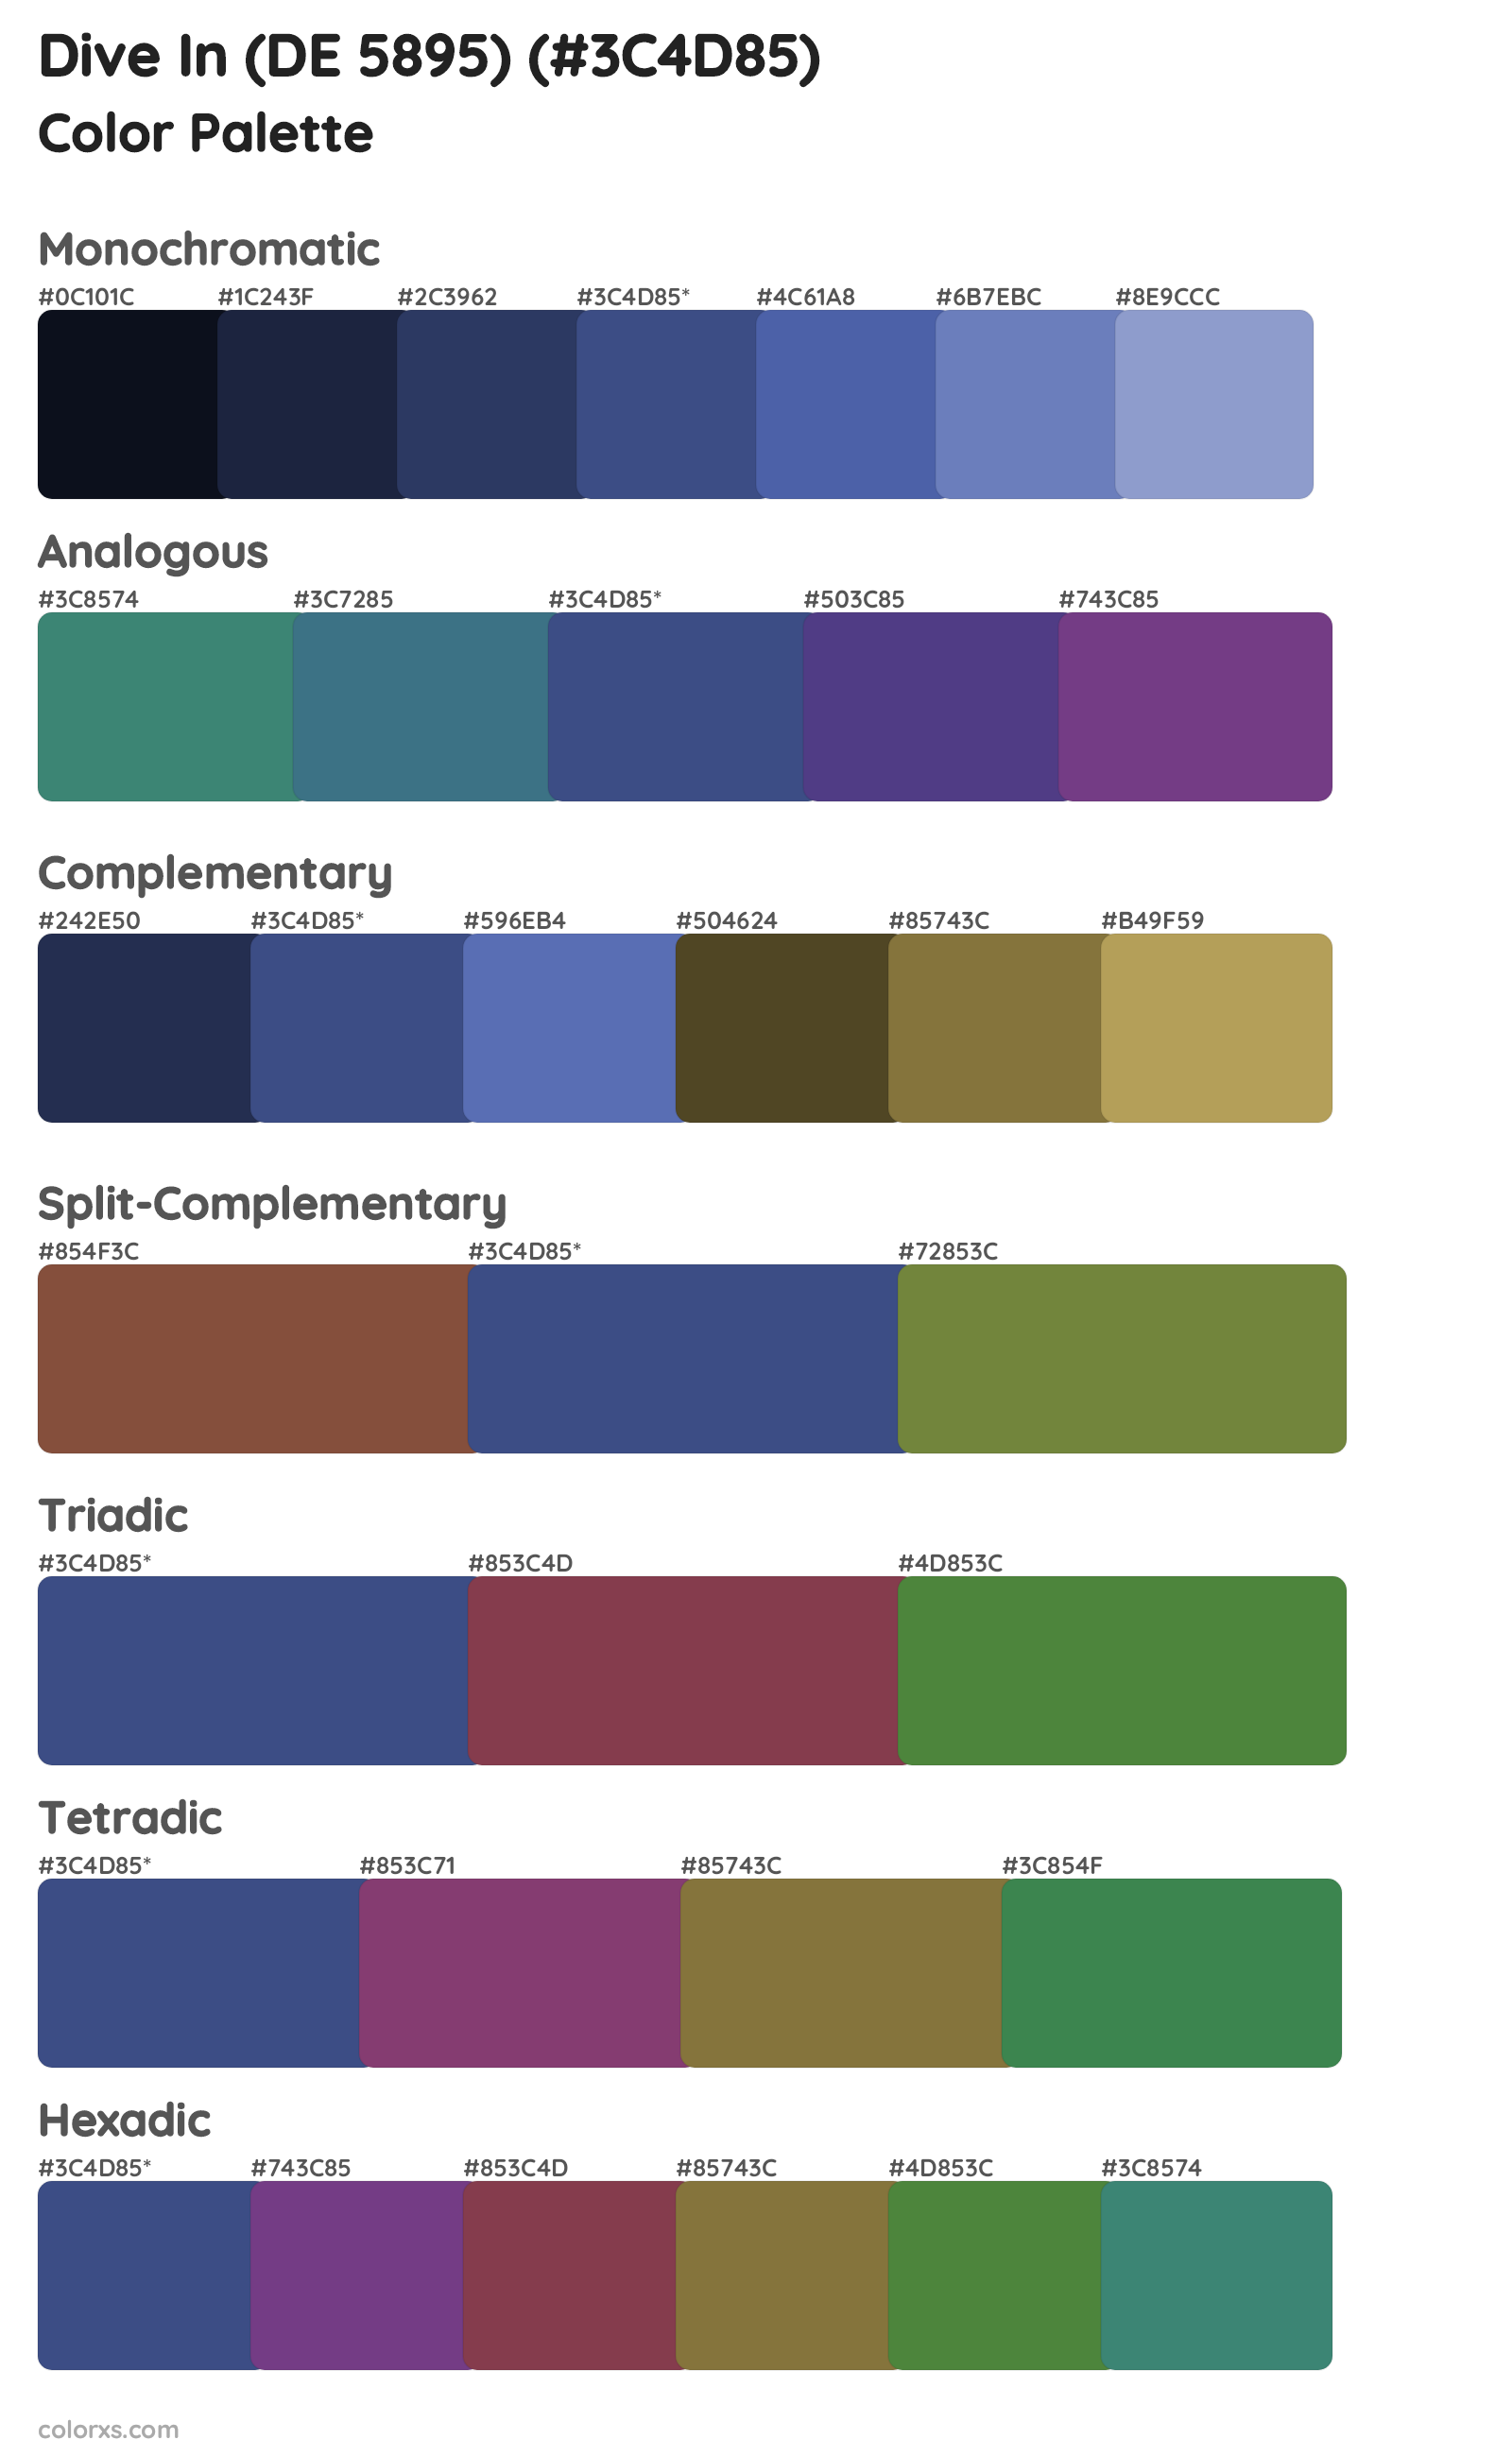 Dive In (DE 5895) Color Scheme Palettes